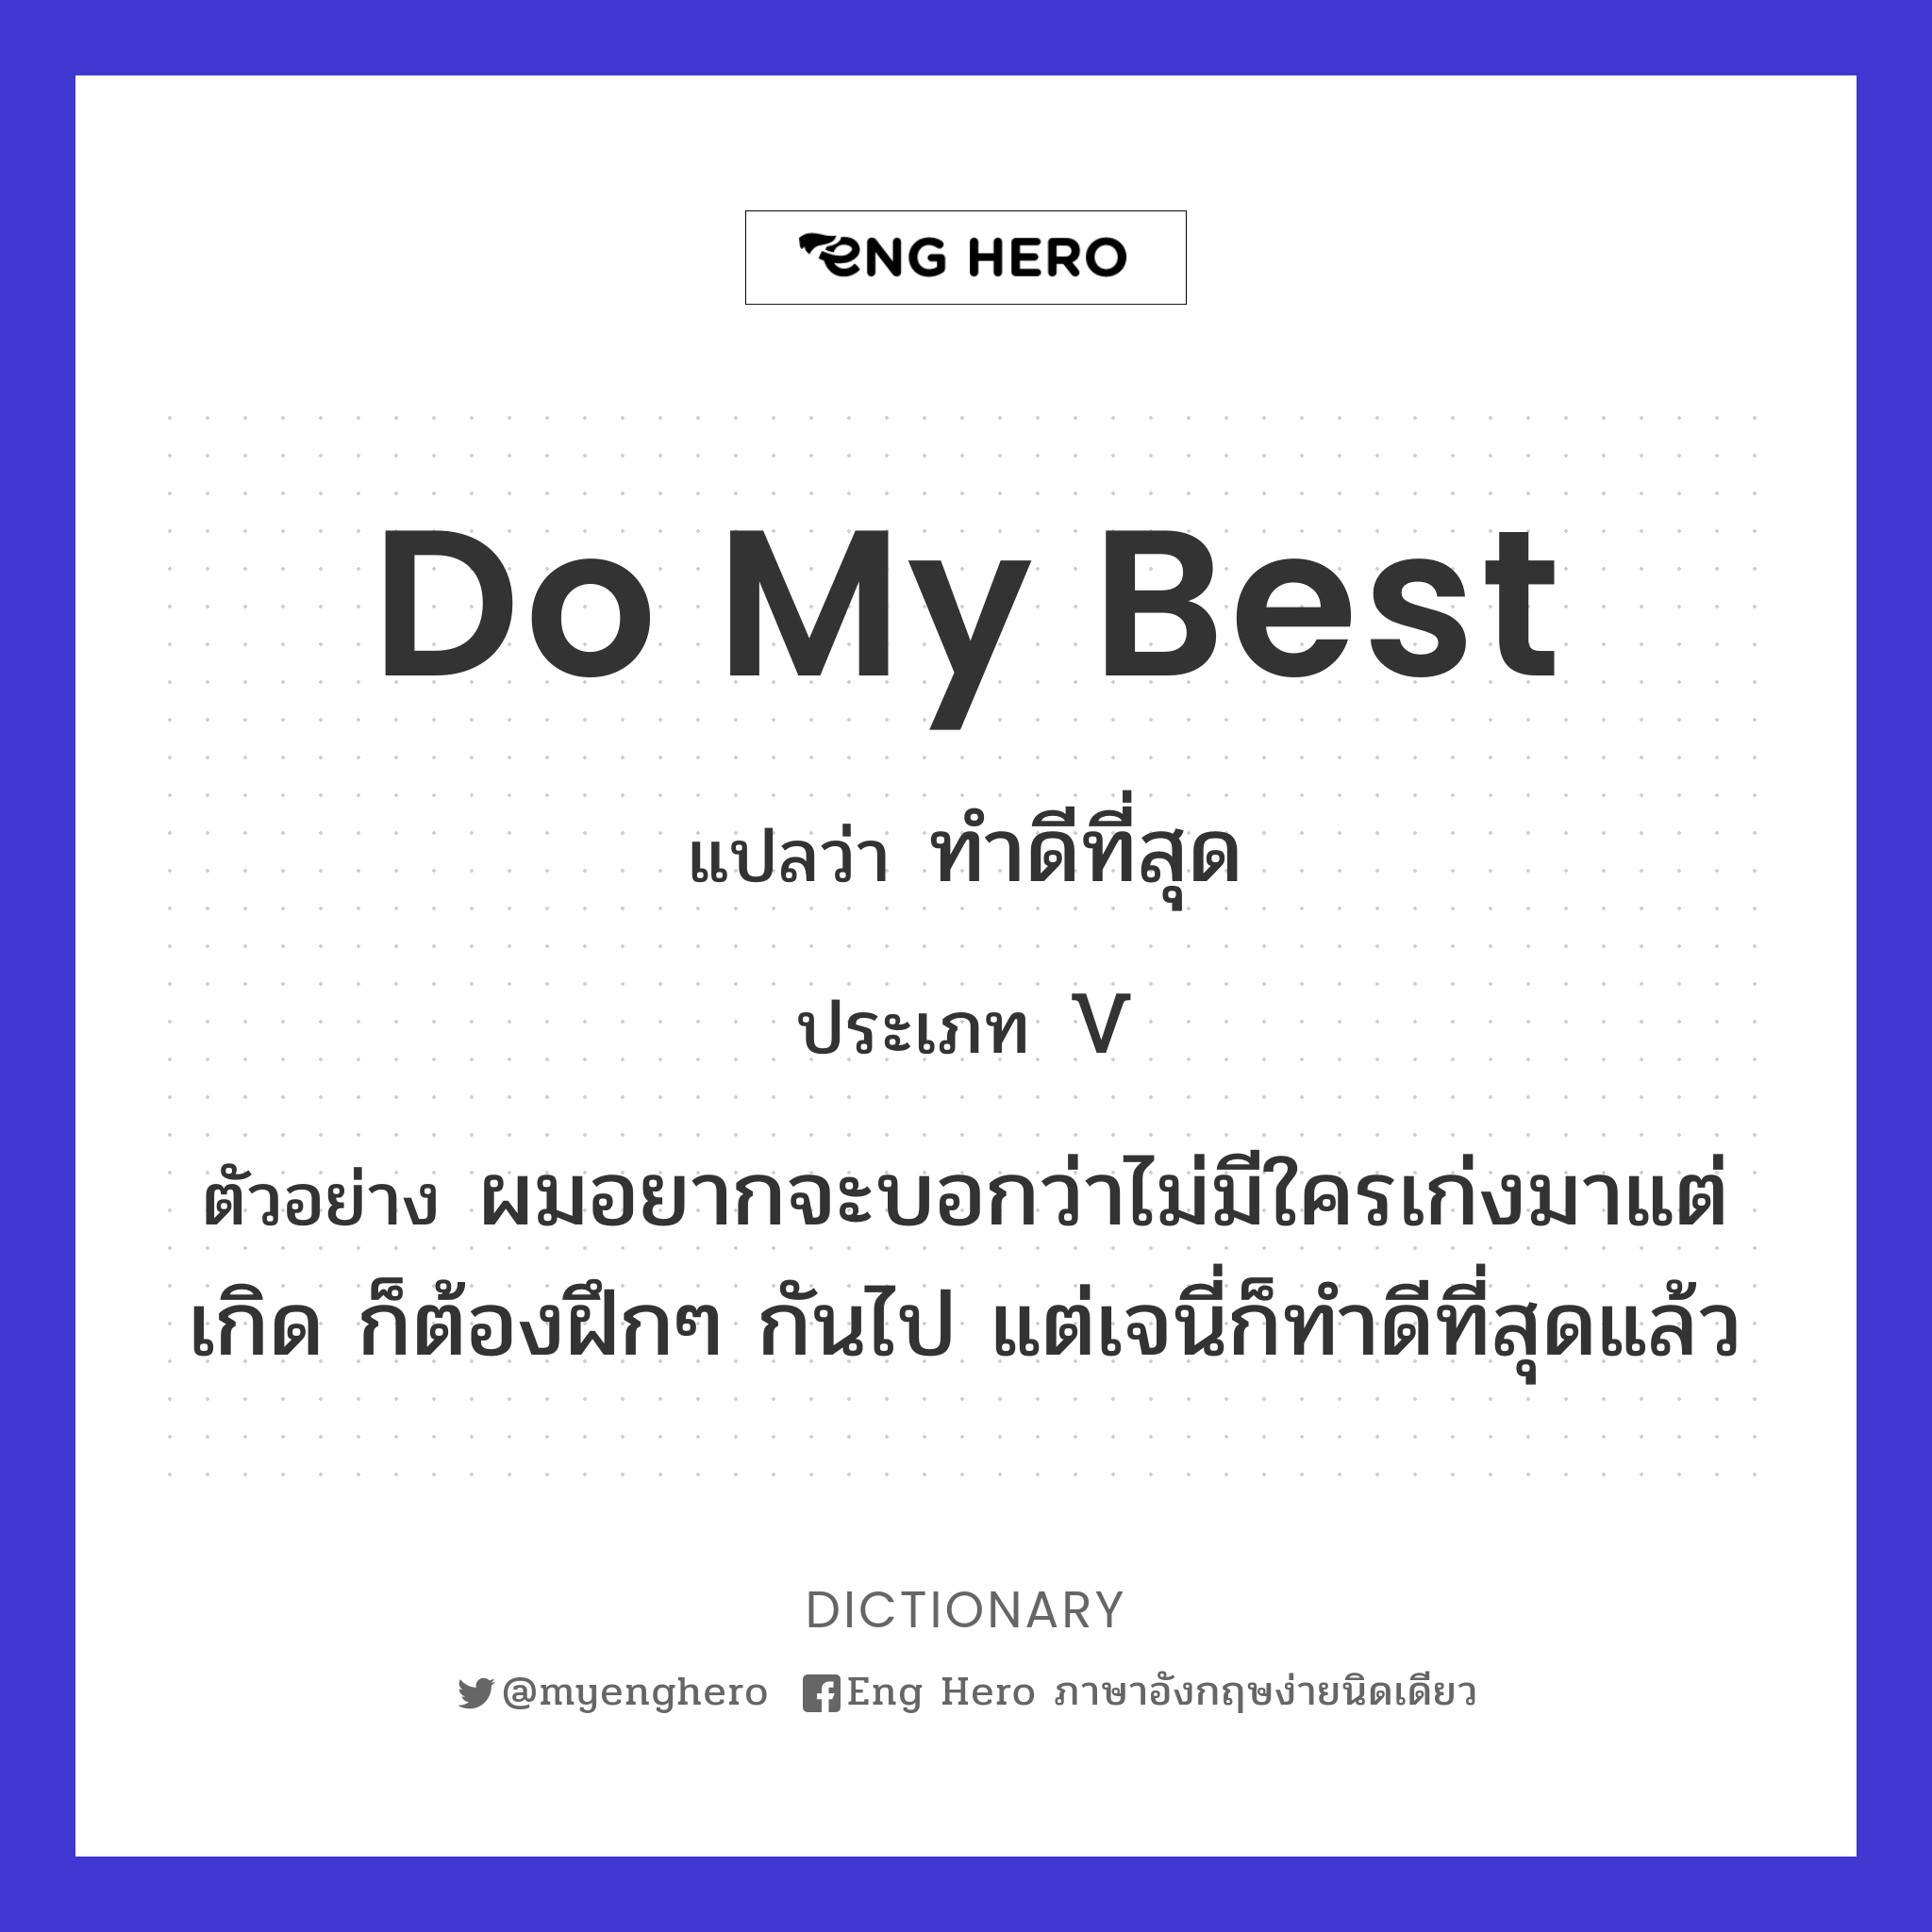 Do My Best แปลว่า ทำดีที่สุด | Eng Hero เรียนภาษาอังกฤษ ออนไลน์ ฟรี